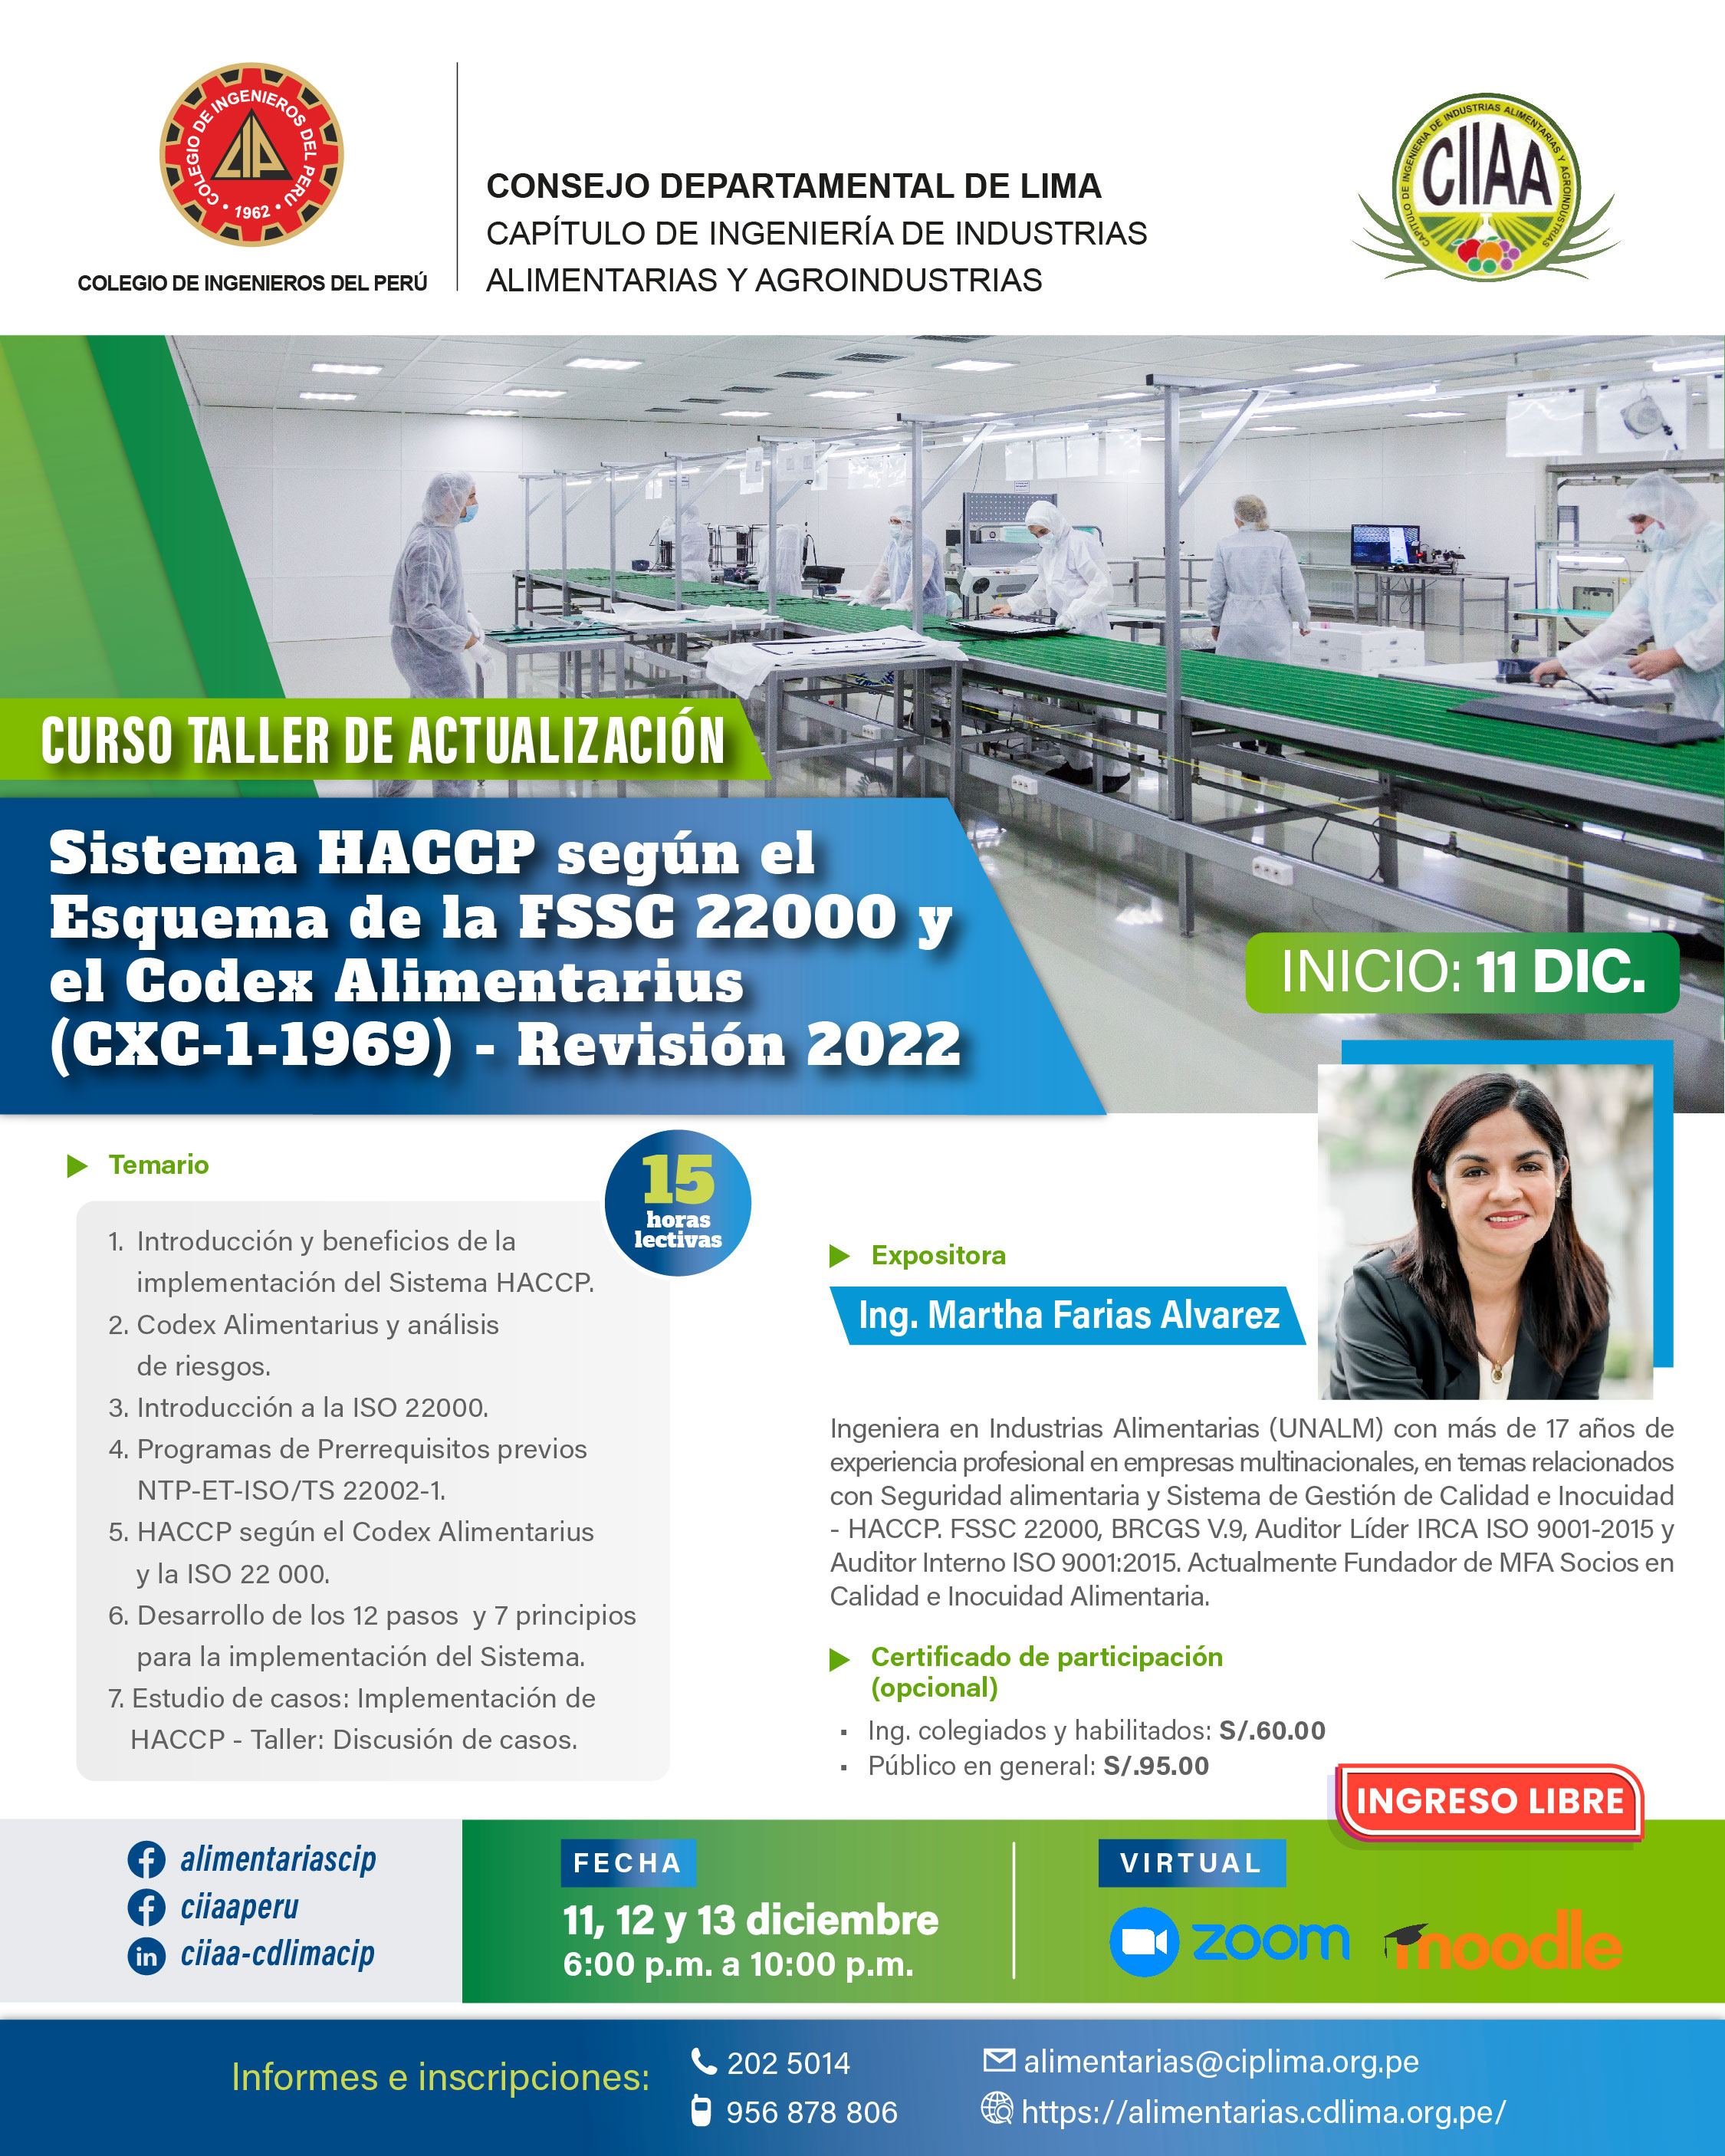 Curso Taller de Actualización Profesional: Sistema HACCP según el Esquema de la FSSC 22000 y el Codex Alimentarius (CXC-1-1969) - Revisión 2022